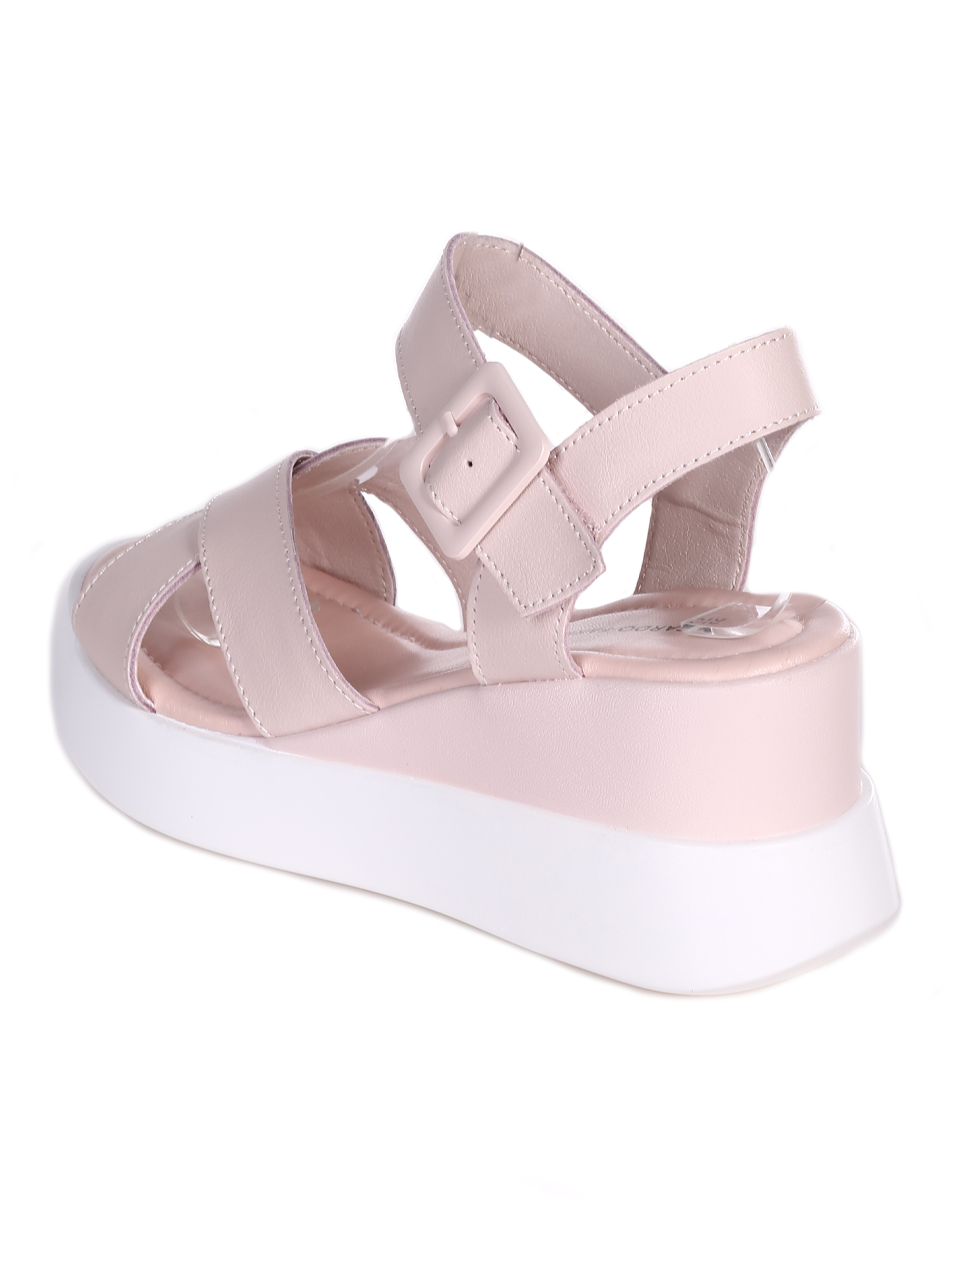 Ежедневни дамски сандали от естествена кожа в розово 4AF-23152 pink